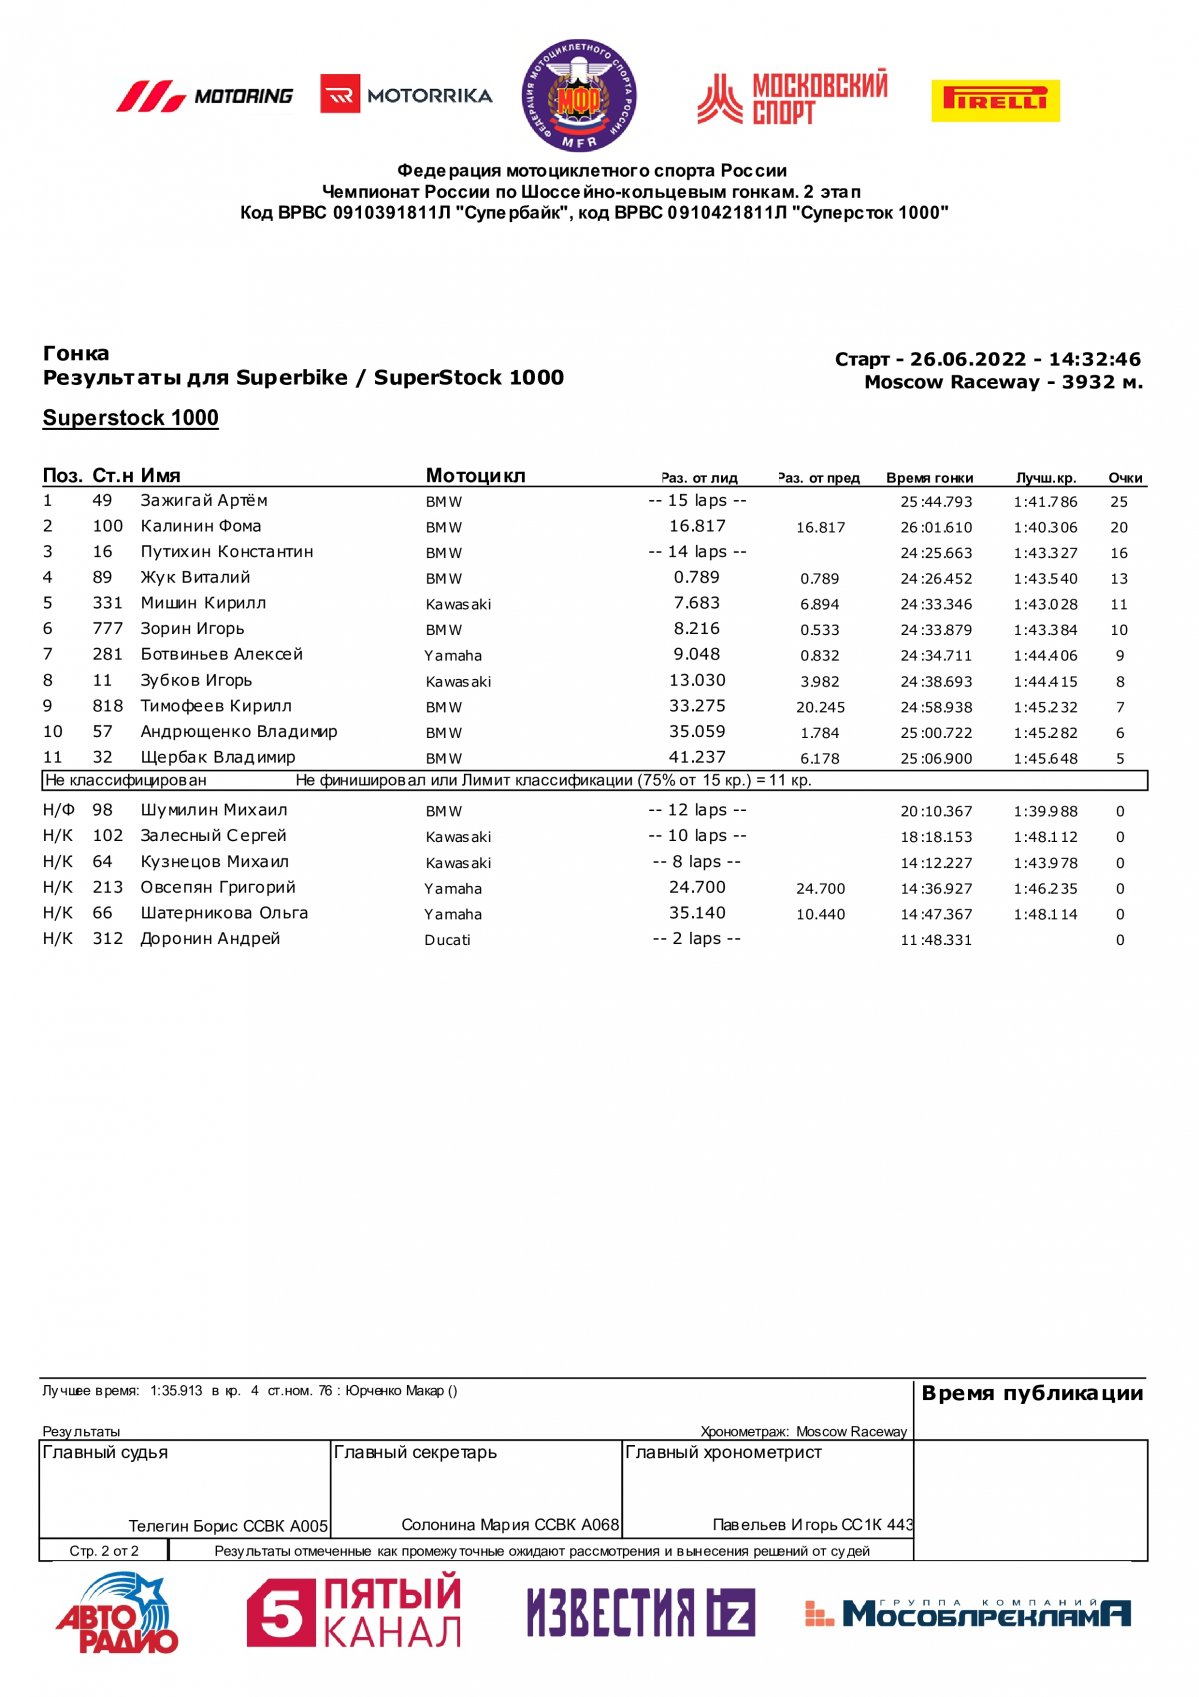 Результаты 2 этапа Чемпионата России класс Superstock-1000, Moscow Raceway (26/06/2022)